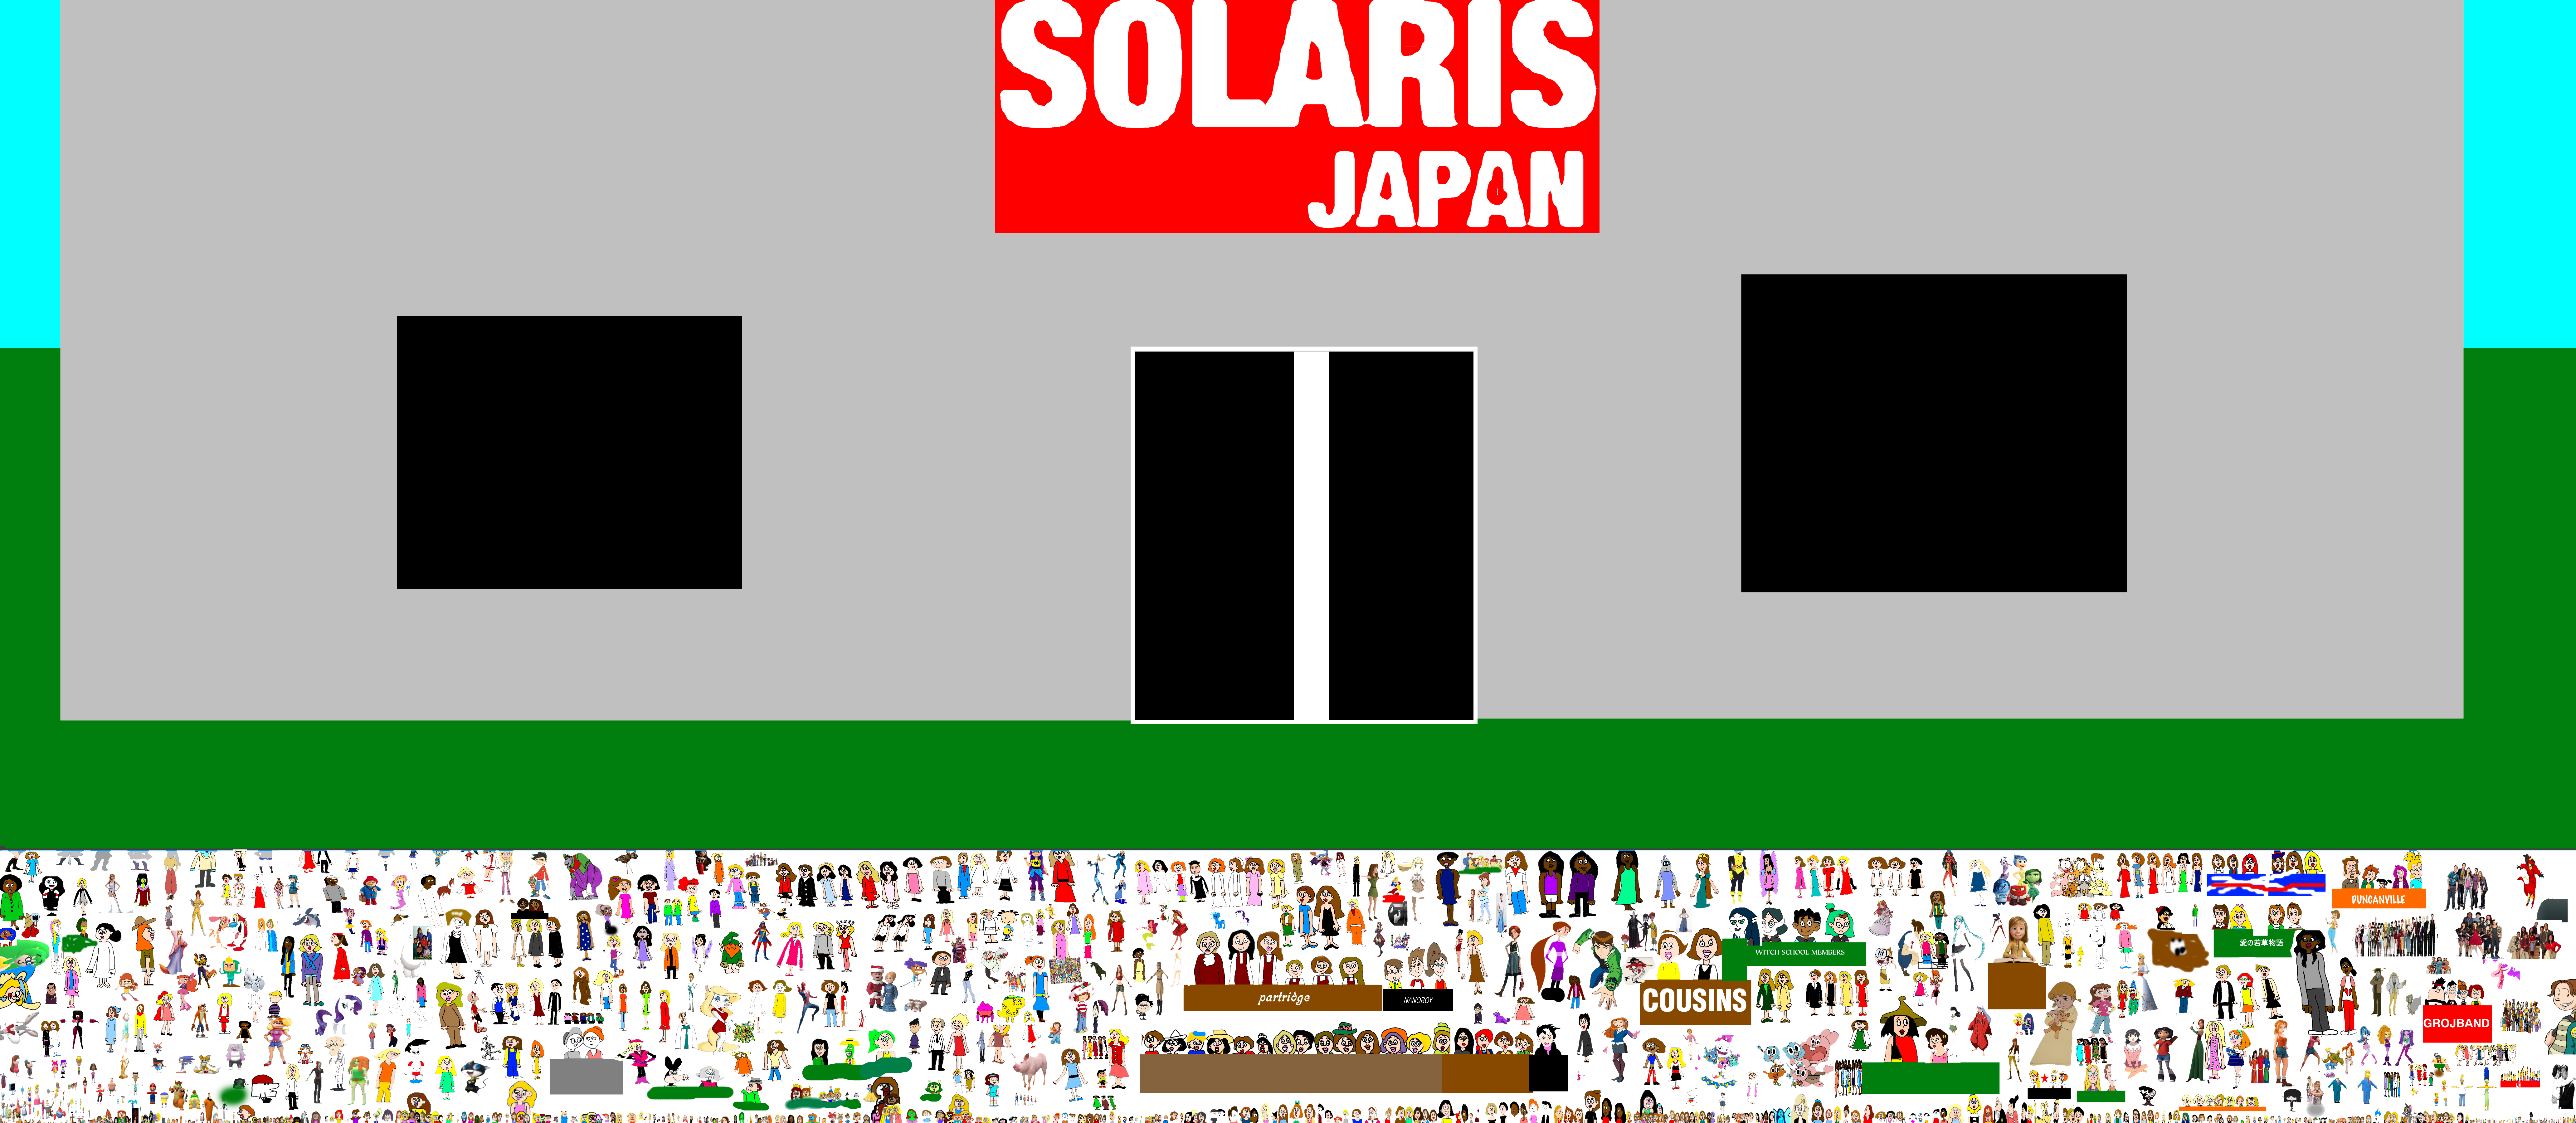 Dog Days 2 - Solaris Japan